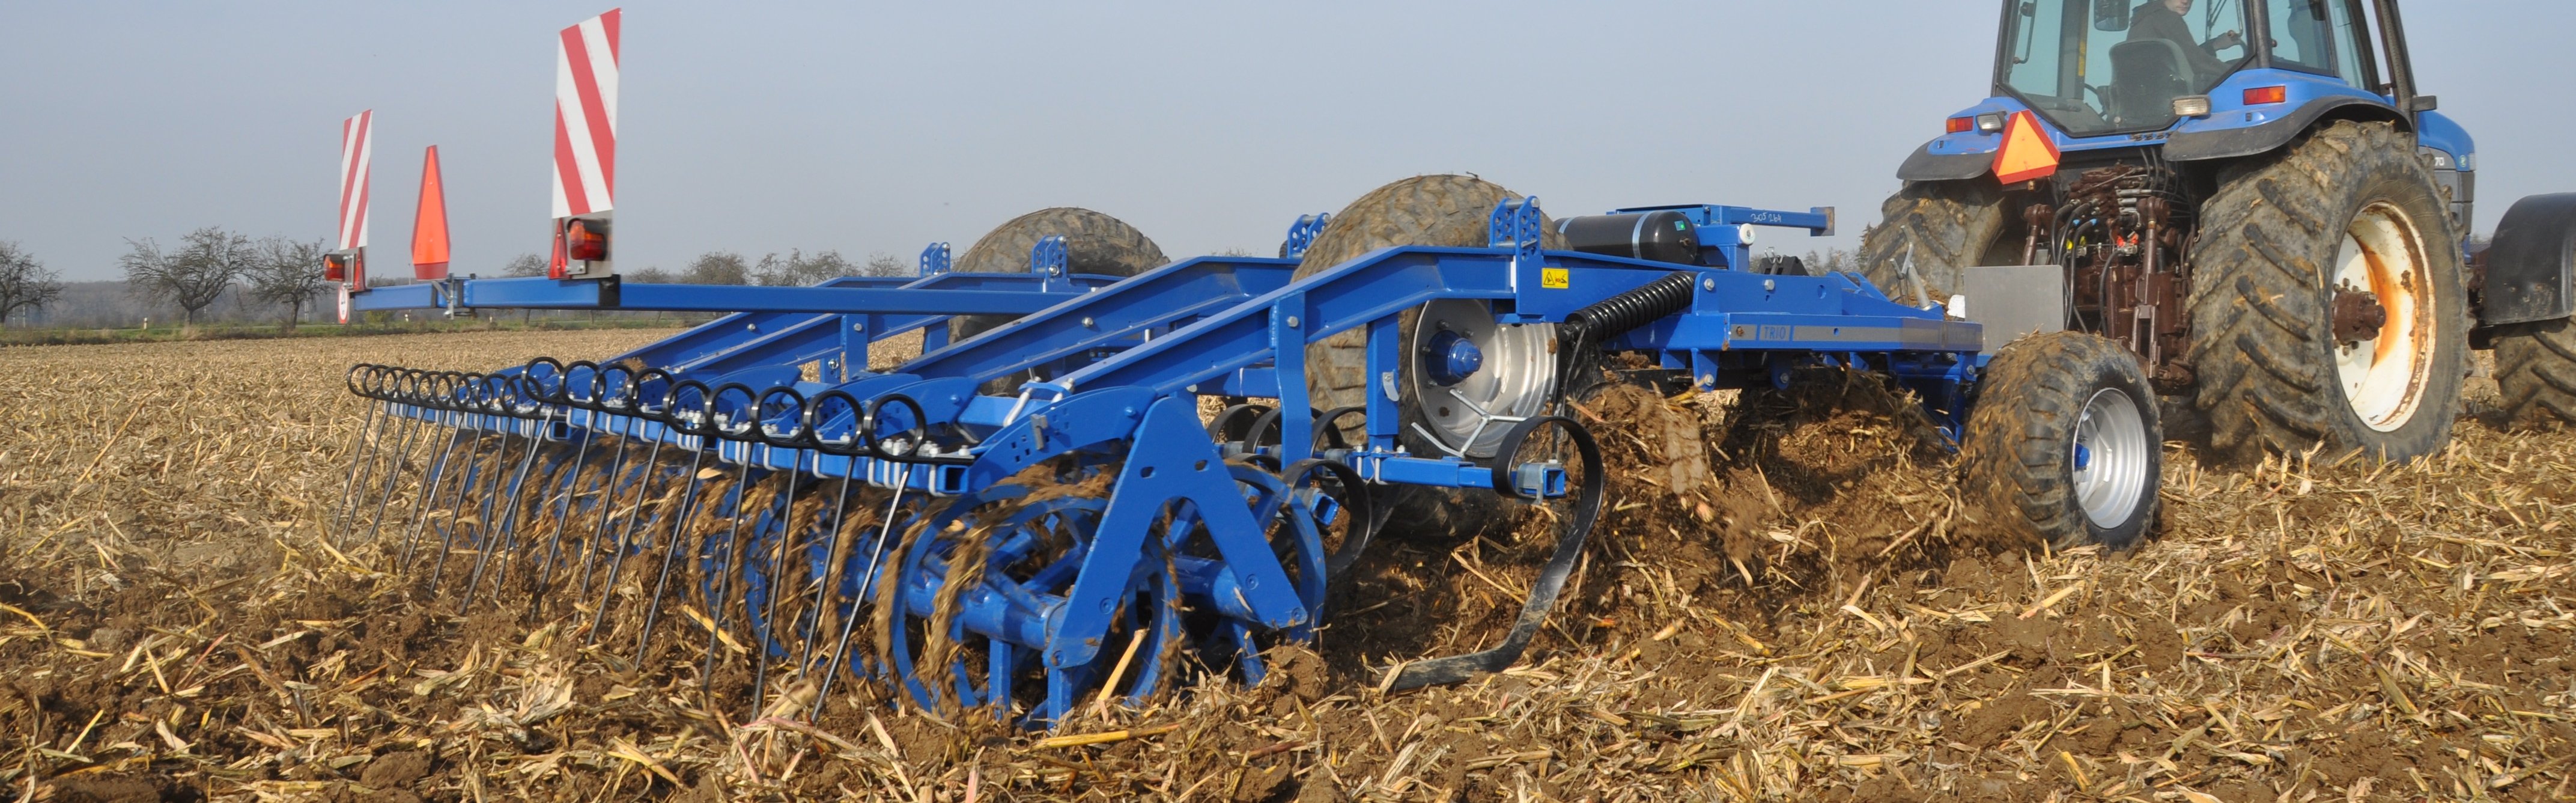 Modrý třířadý podmítač s integrovaným podvozkem s traktorem na poli